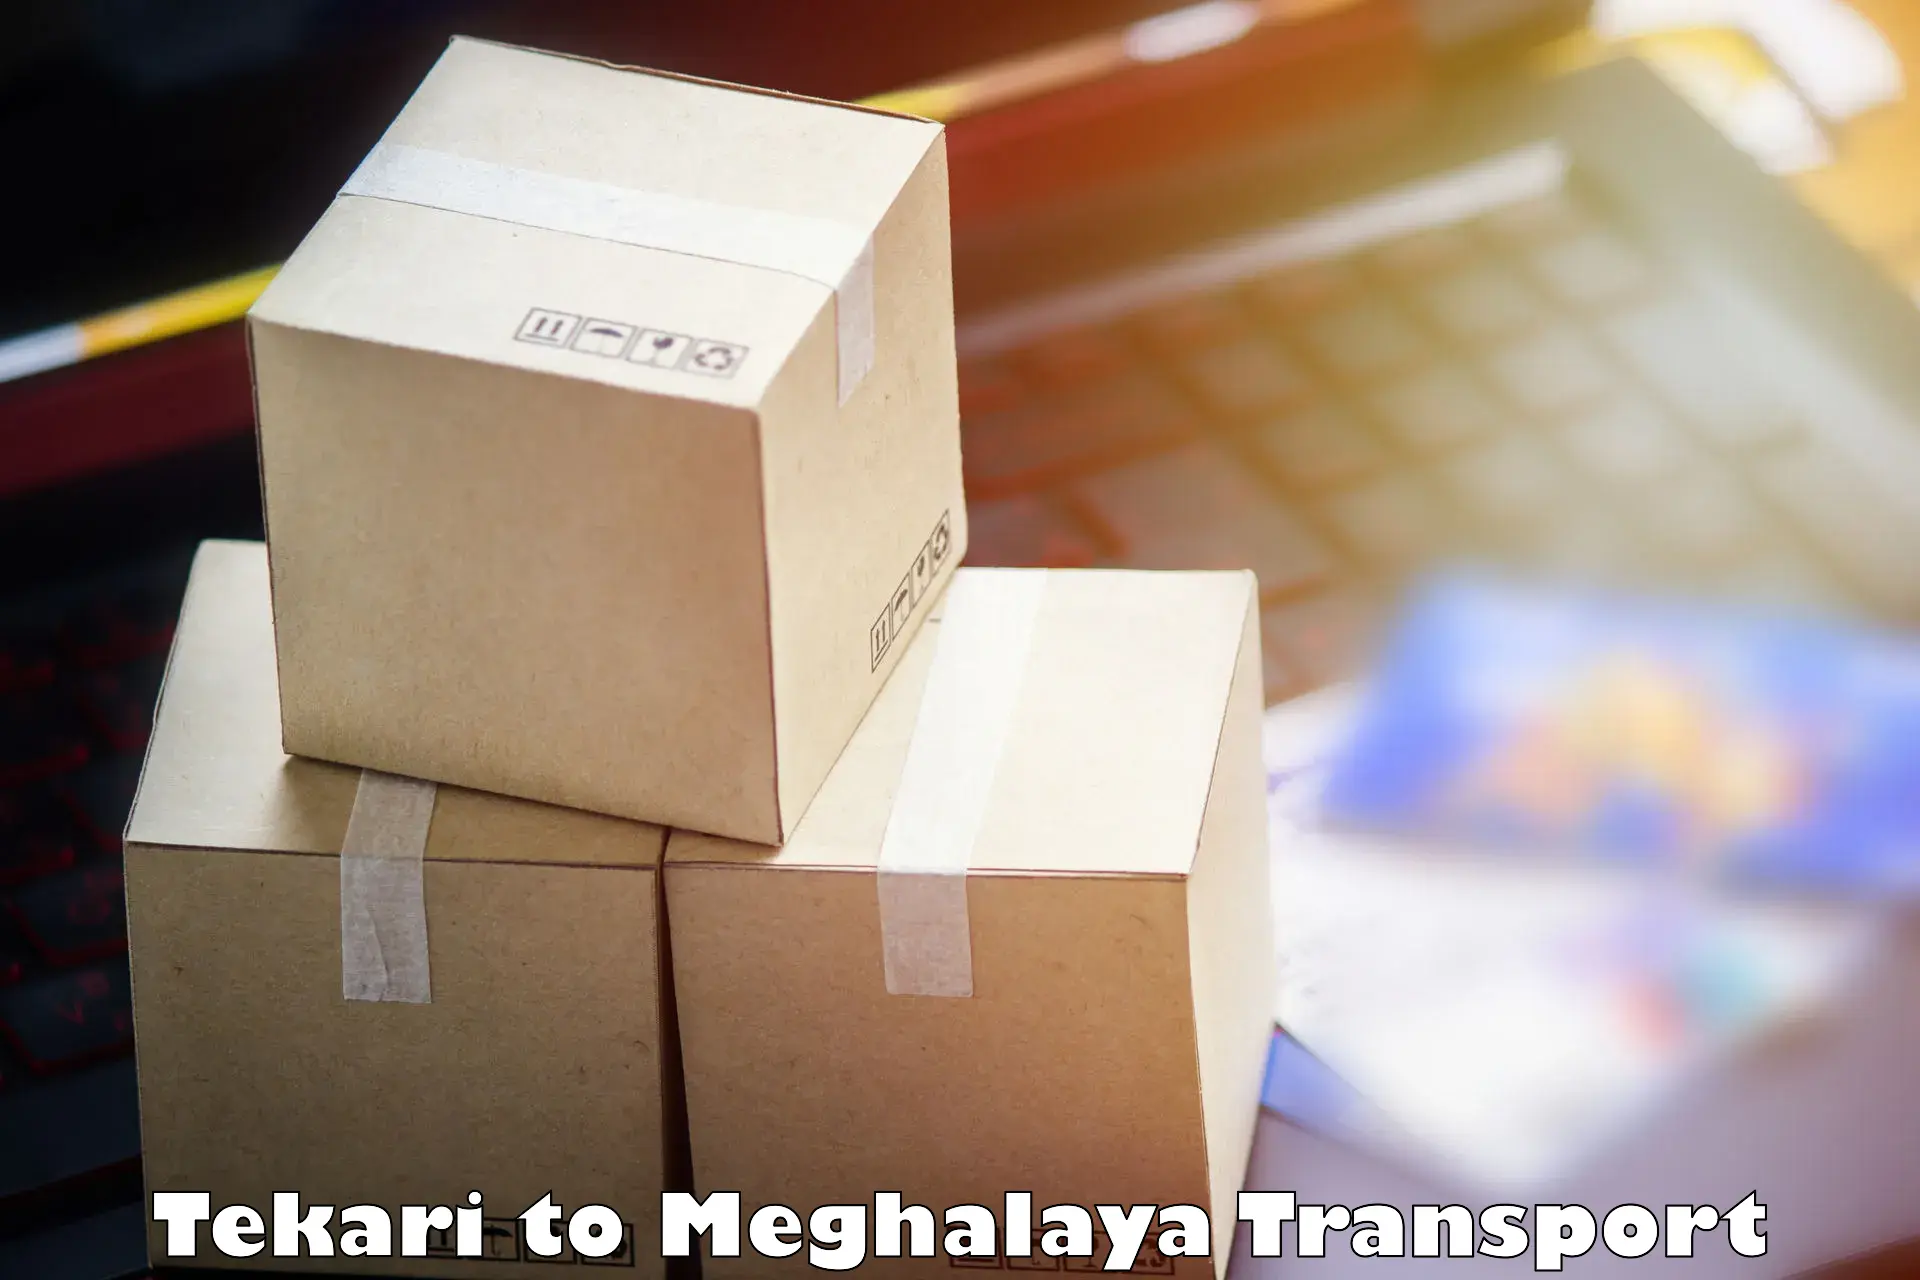 Daily transport service Tekari to Meghalaya